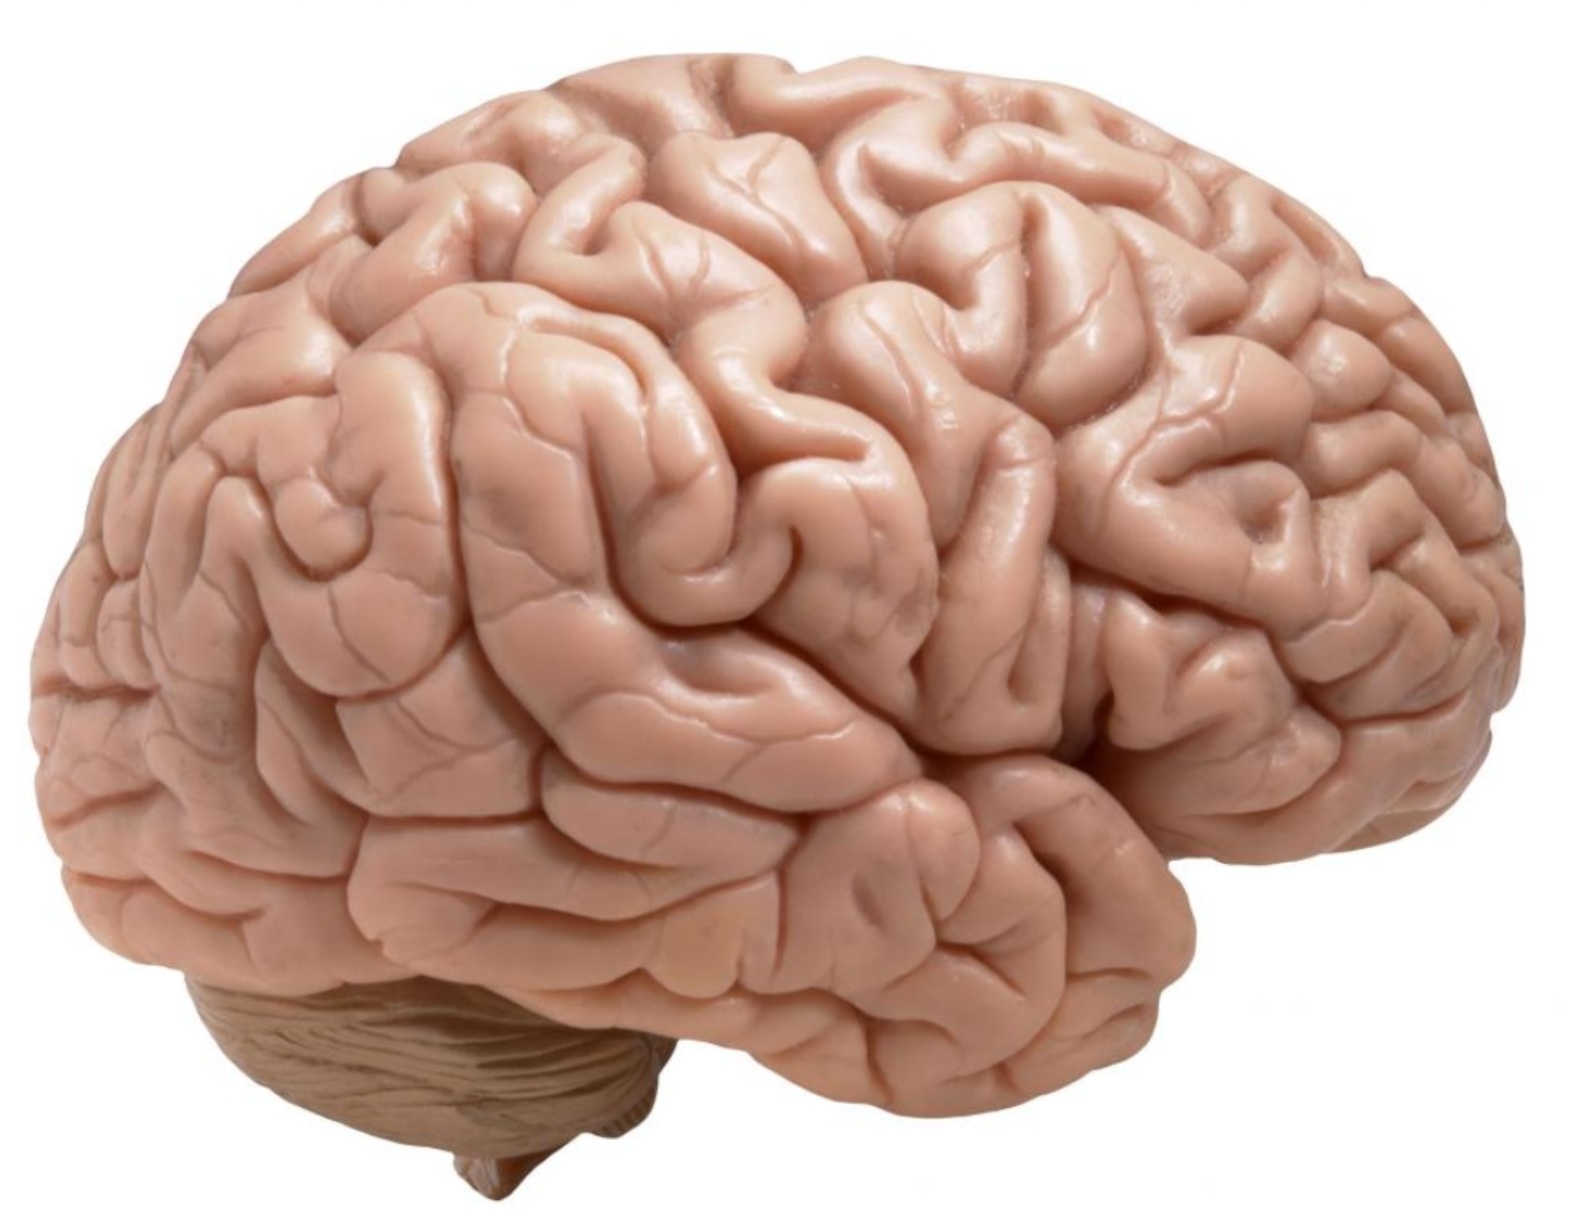 ¿Qué región del cerebro es realmente necesaria?